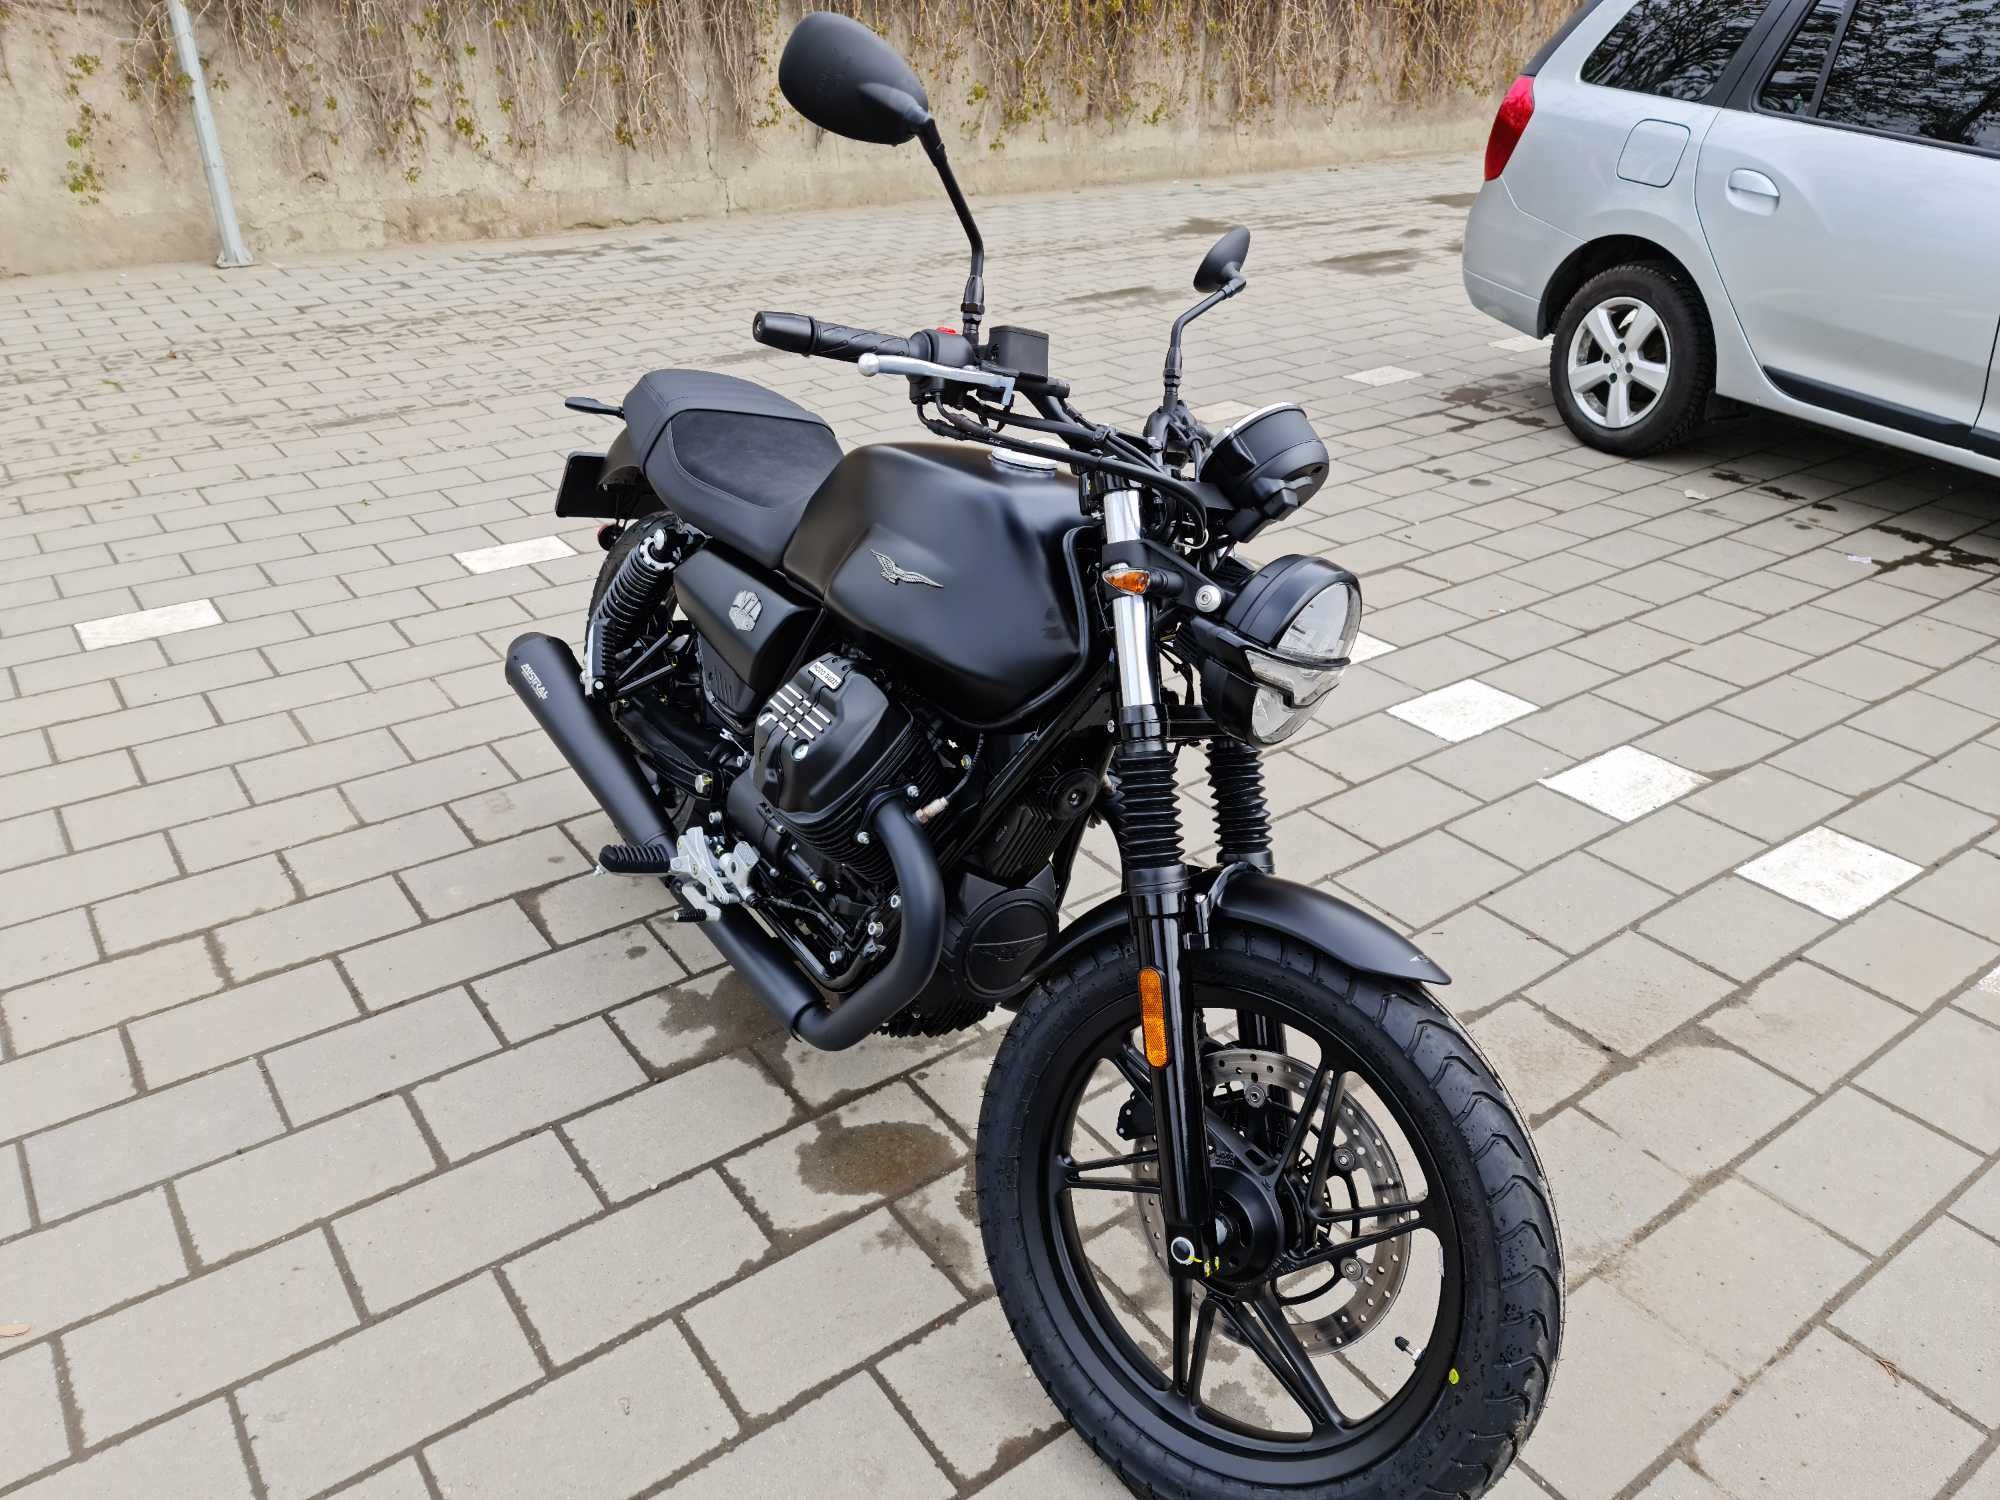 Moto Guzzi V7 850 cc